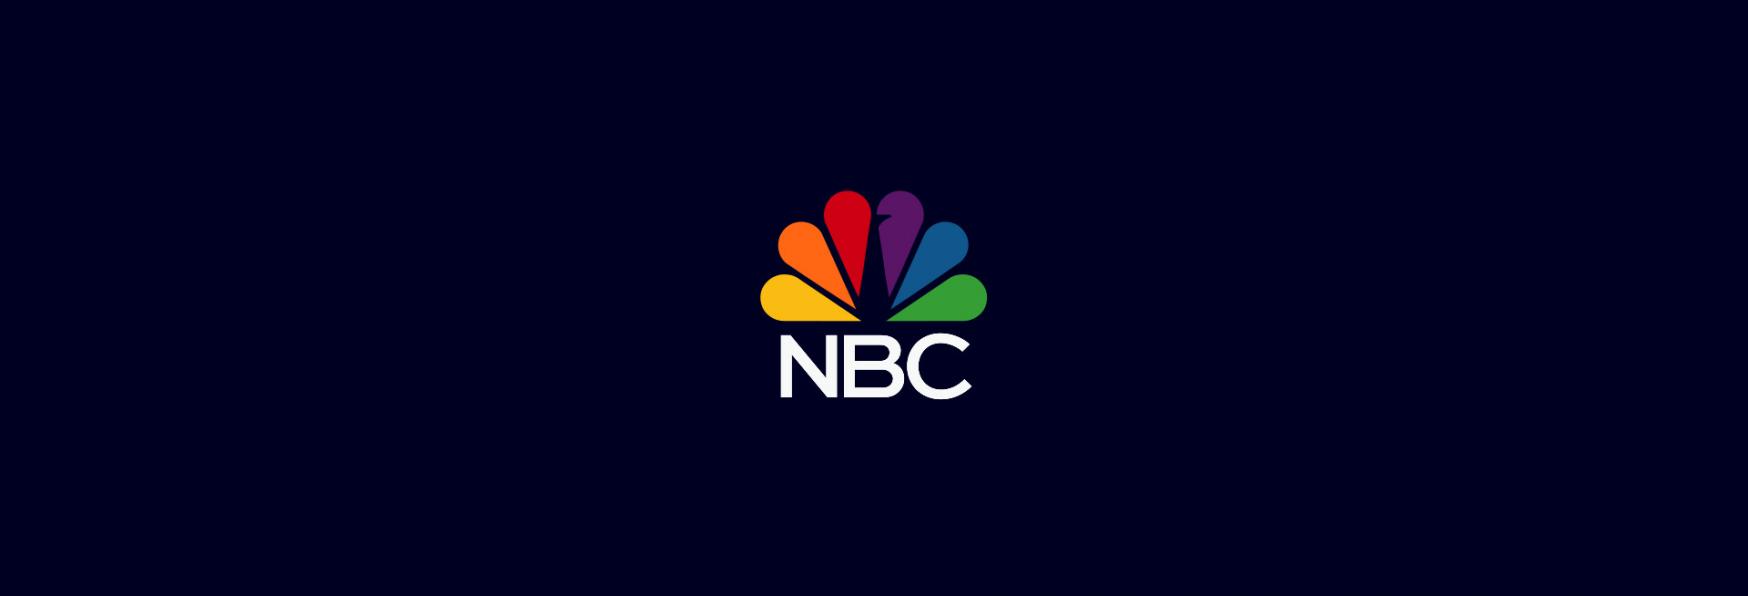 NBC annuncia la Data di Uscita di Law & Order 22, New Amsterdam 5 e molte altre Serie TV